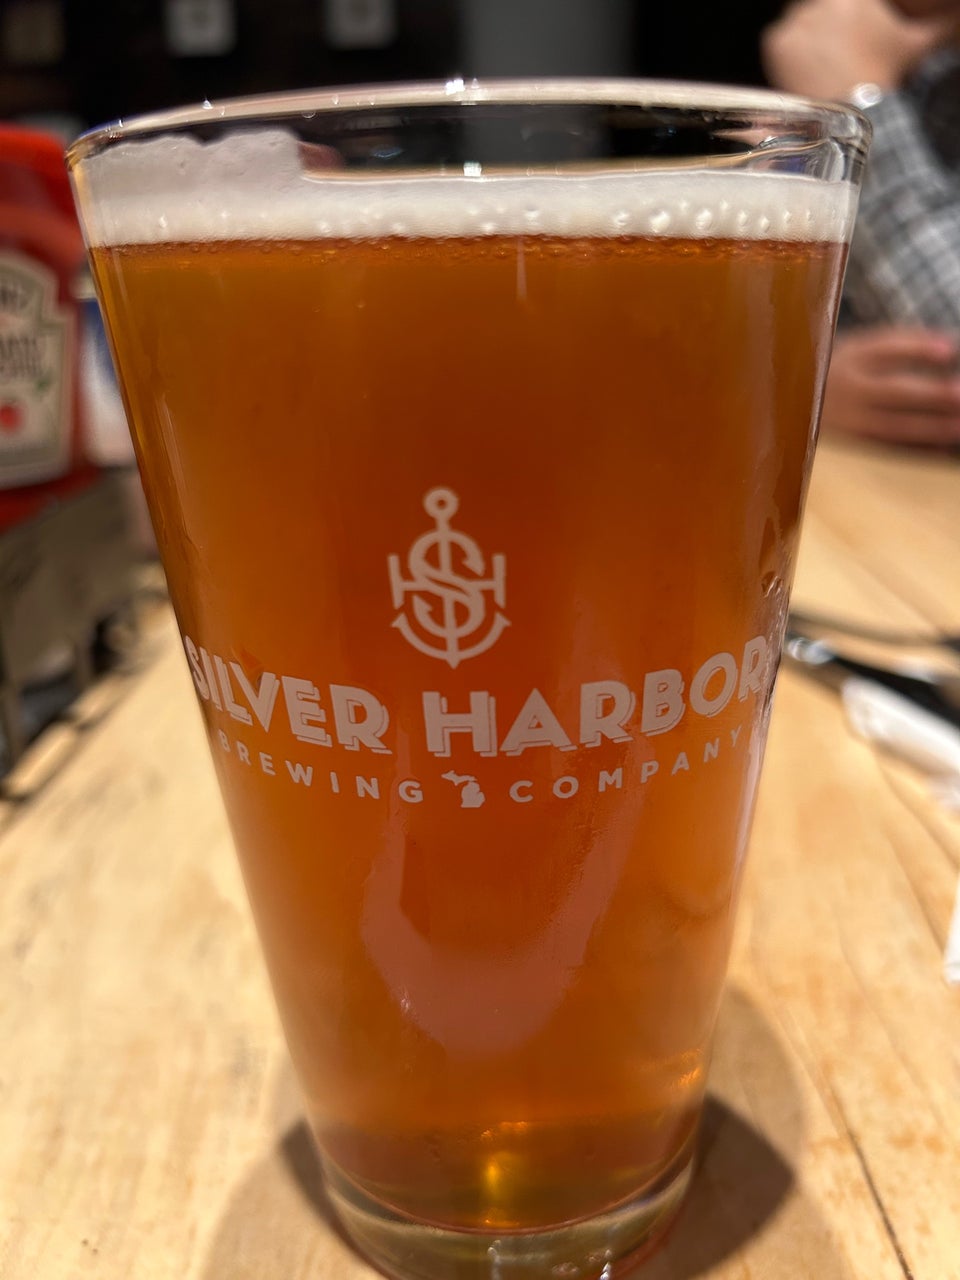 Silver Harbor Brewing Company